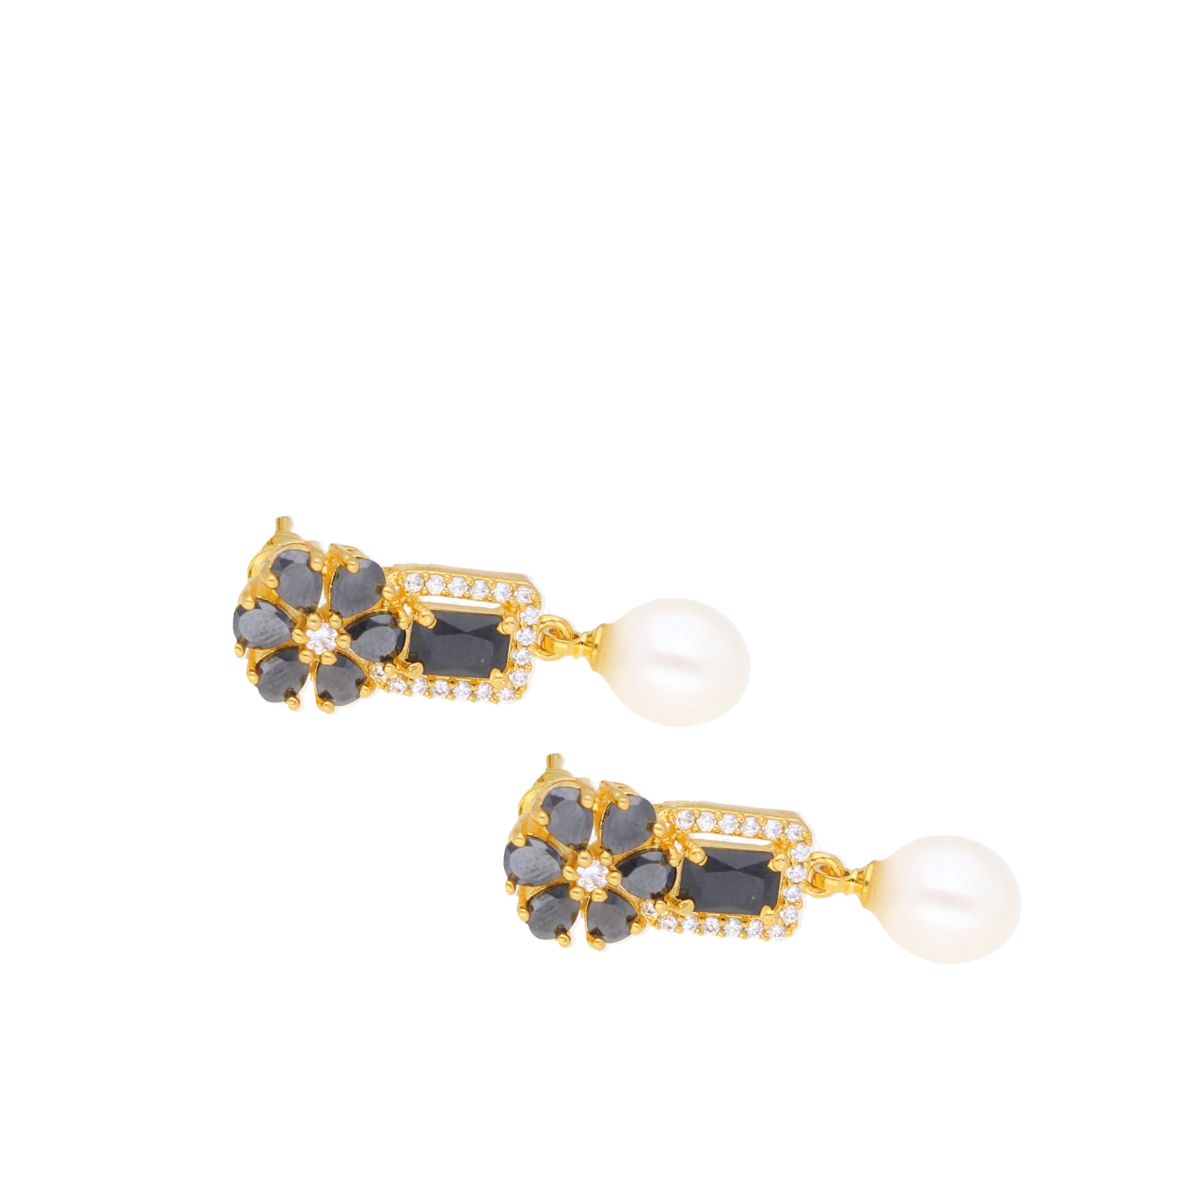 Buy Real Pearl Stud Earrings Fresh Water Pearl Earrings Bridesmaids Jewelry  Bridesmaid Gifts Wedding Earrings Bridesmaid Earrings Necklace Set Online  in India - Etsy